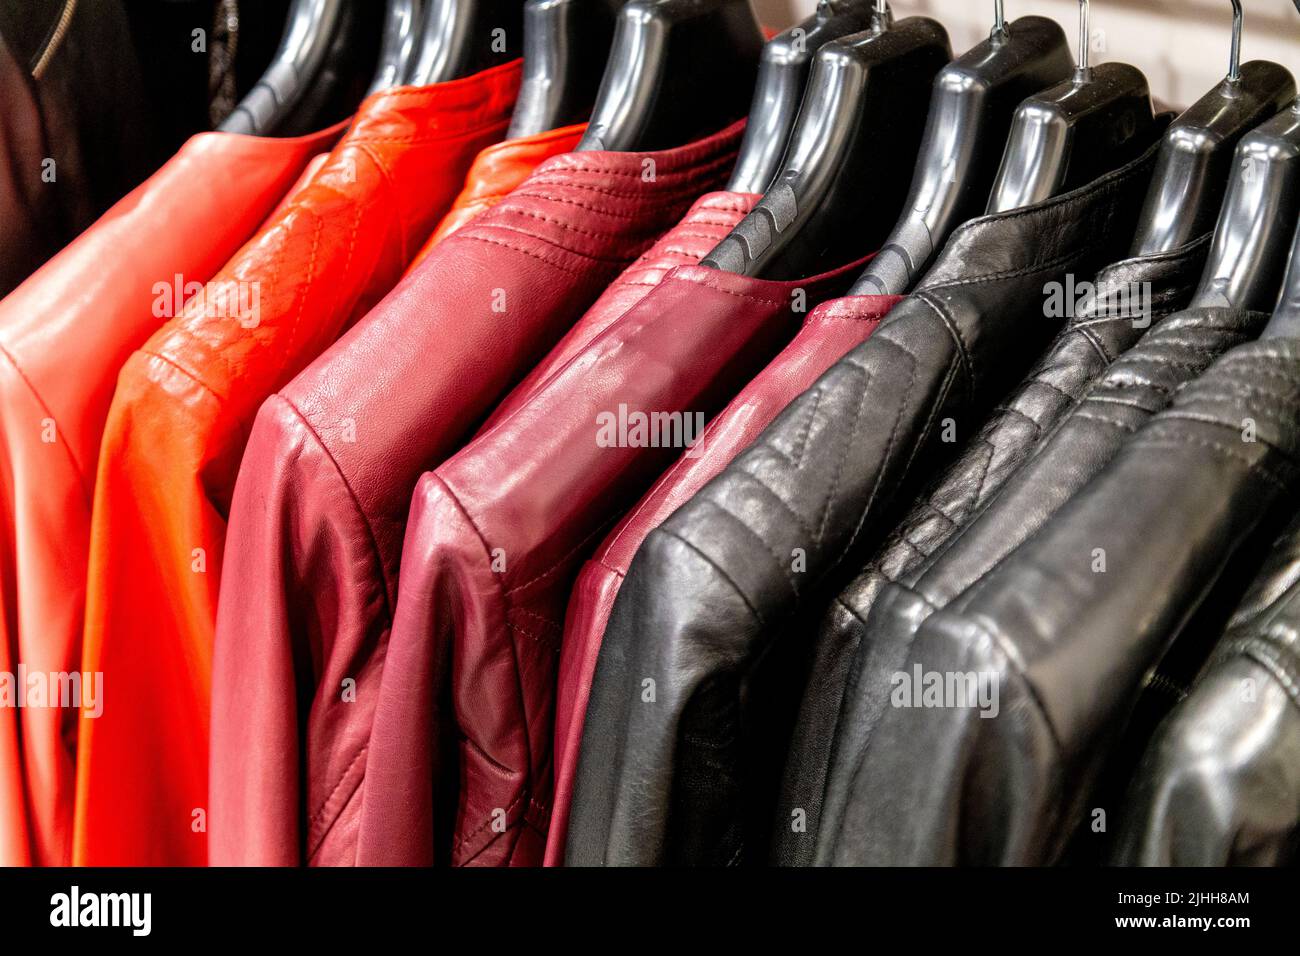 Giacchette colorate in pelle rossa e nera appese su una rotaia Foto Stock